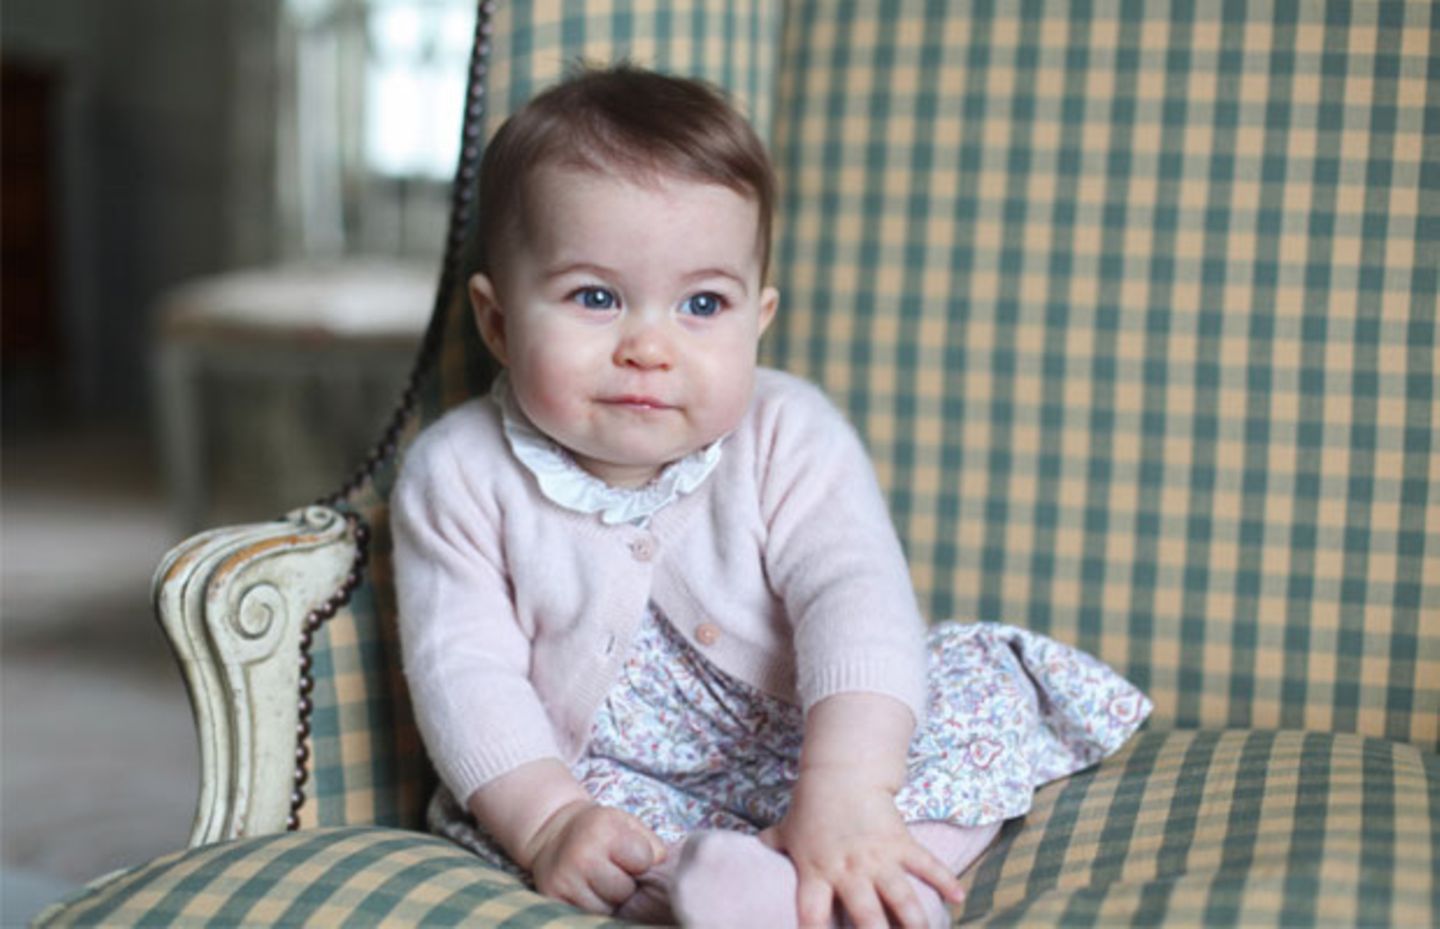 Zuckersüße neue Fotos von Prinzessin Charlotte